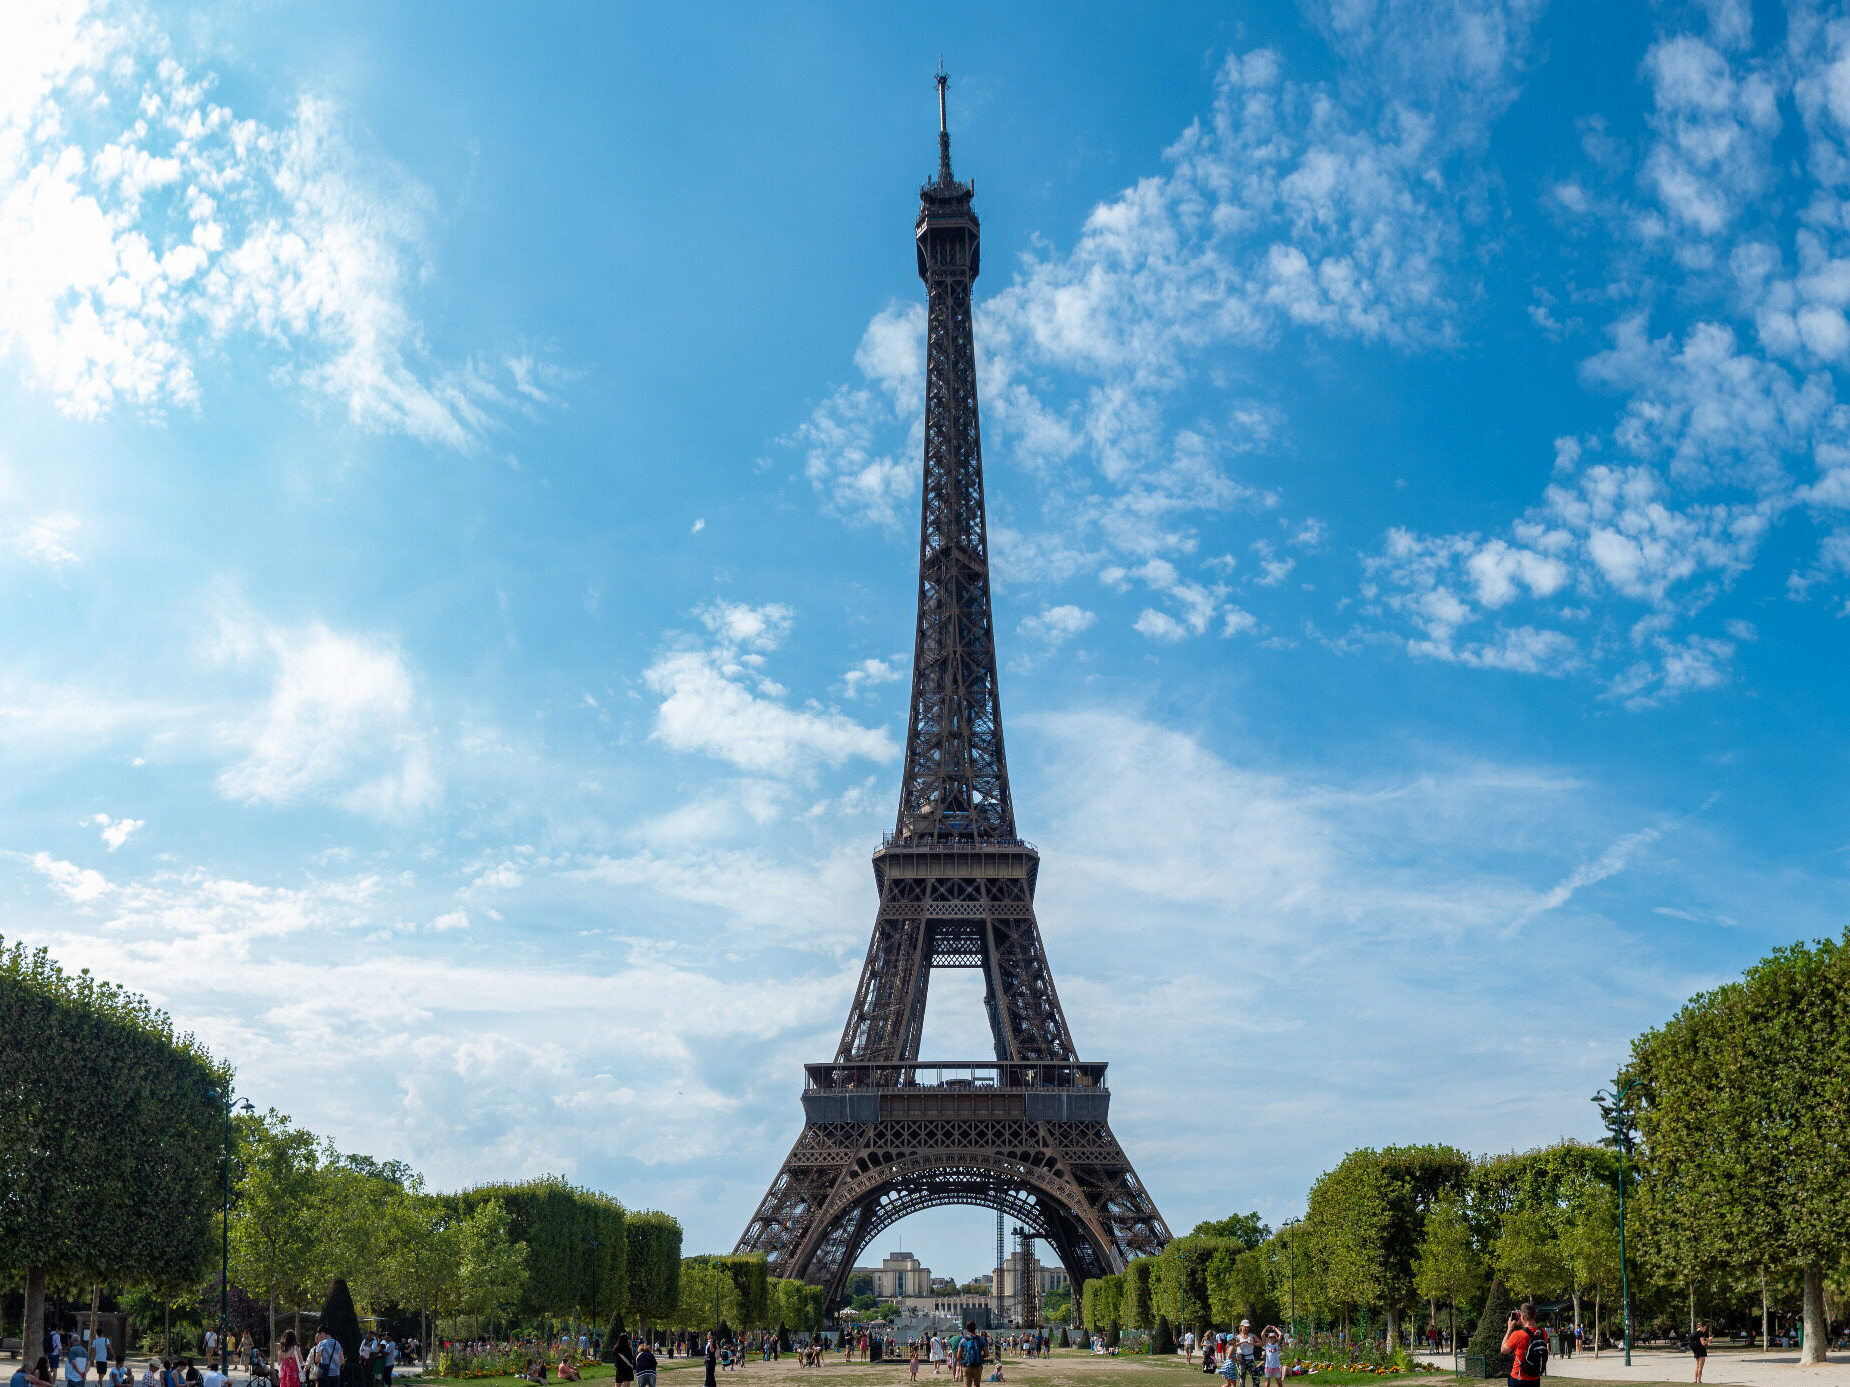 Zdjęcie tej budowli ma chyba każdy, kto odwiedził Paryż. My uwieczniliśmy ją: